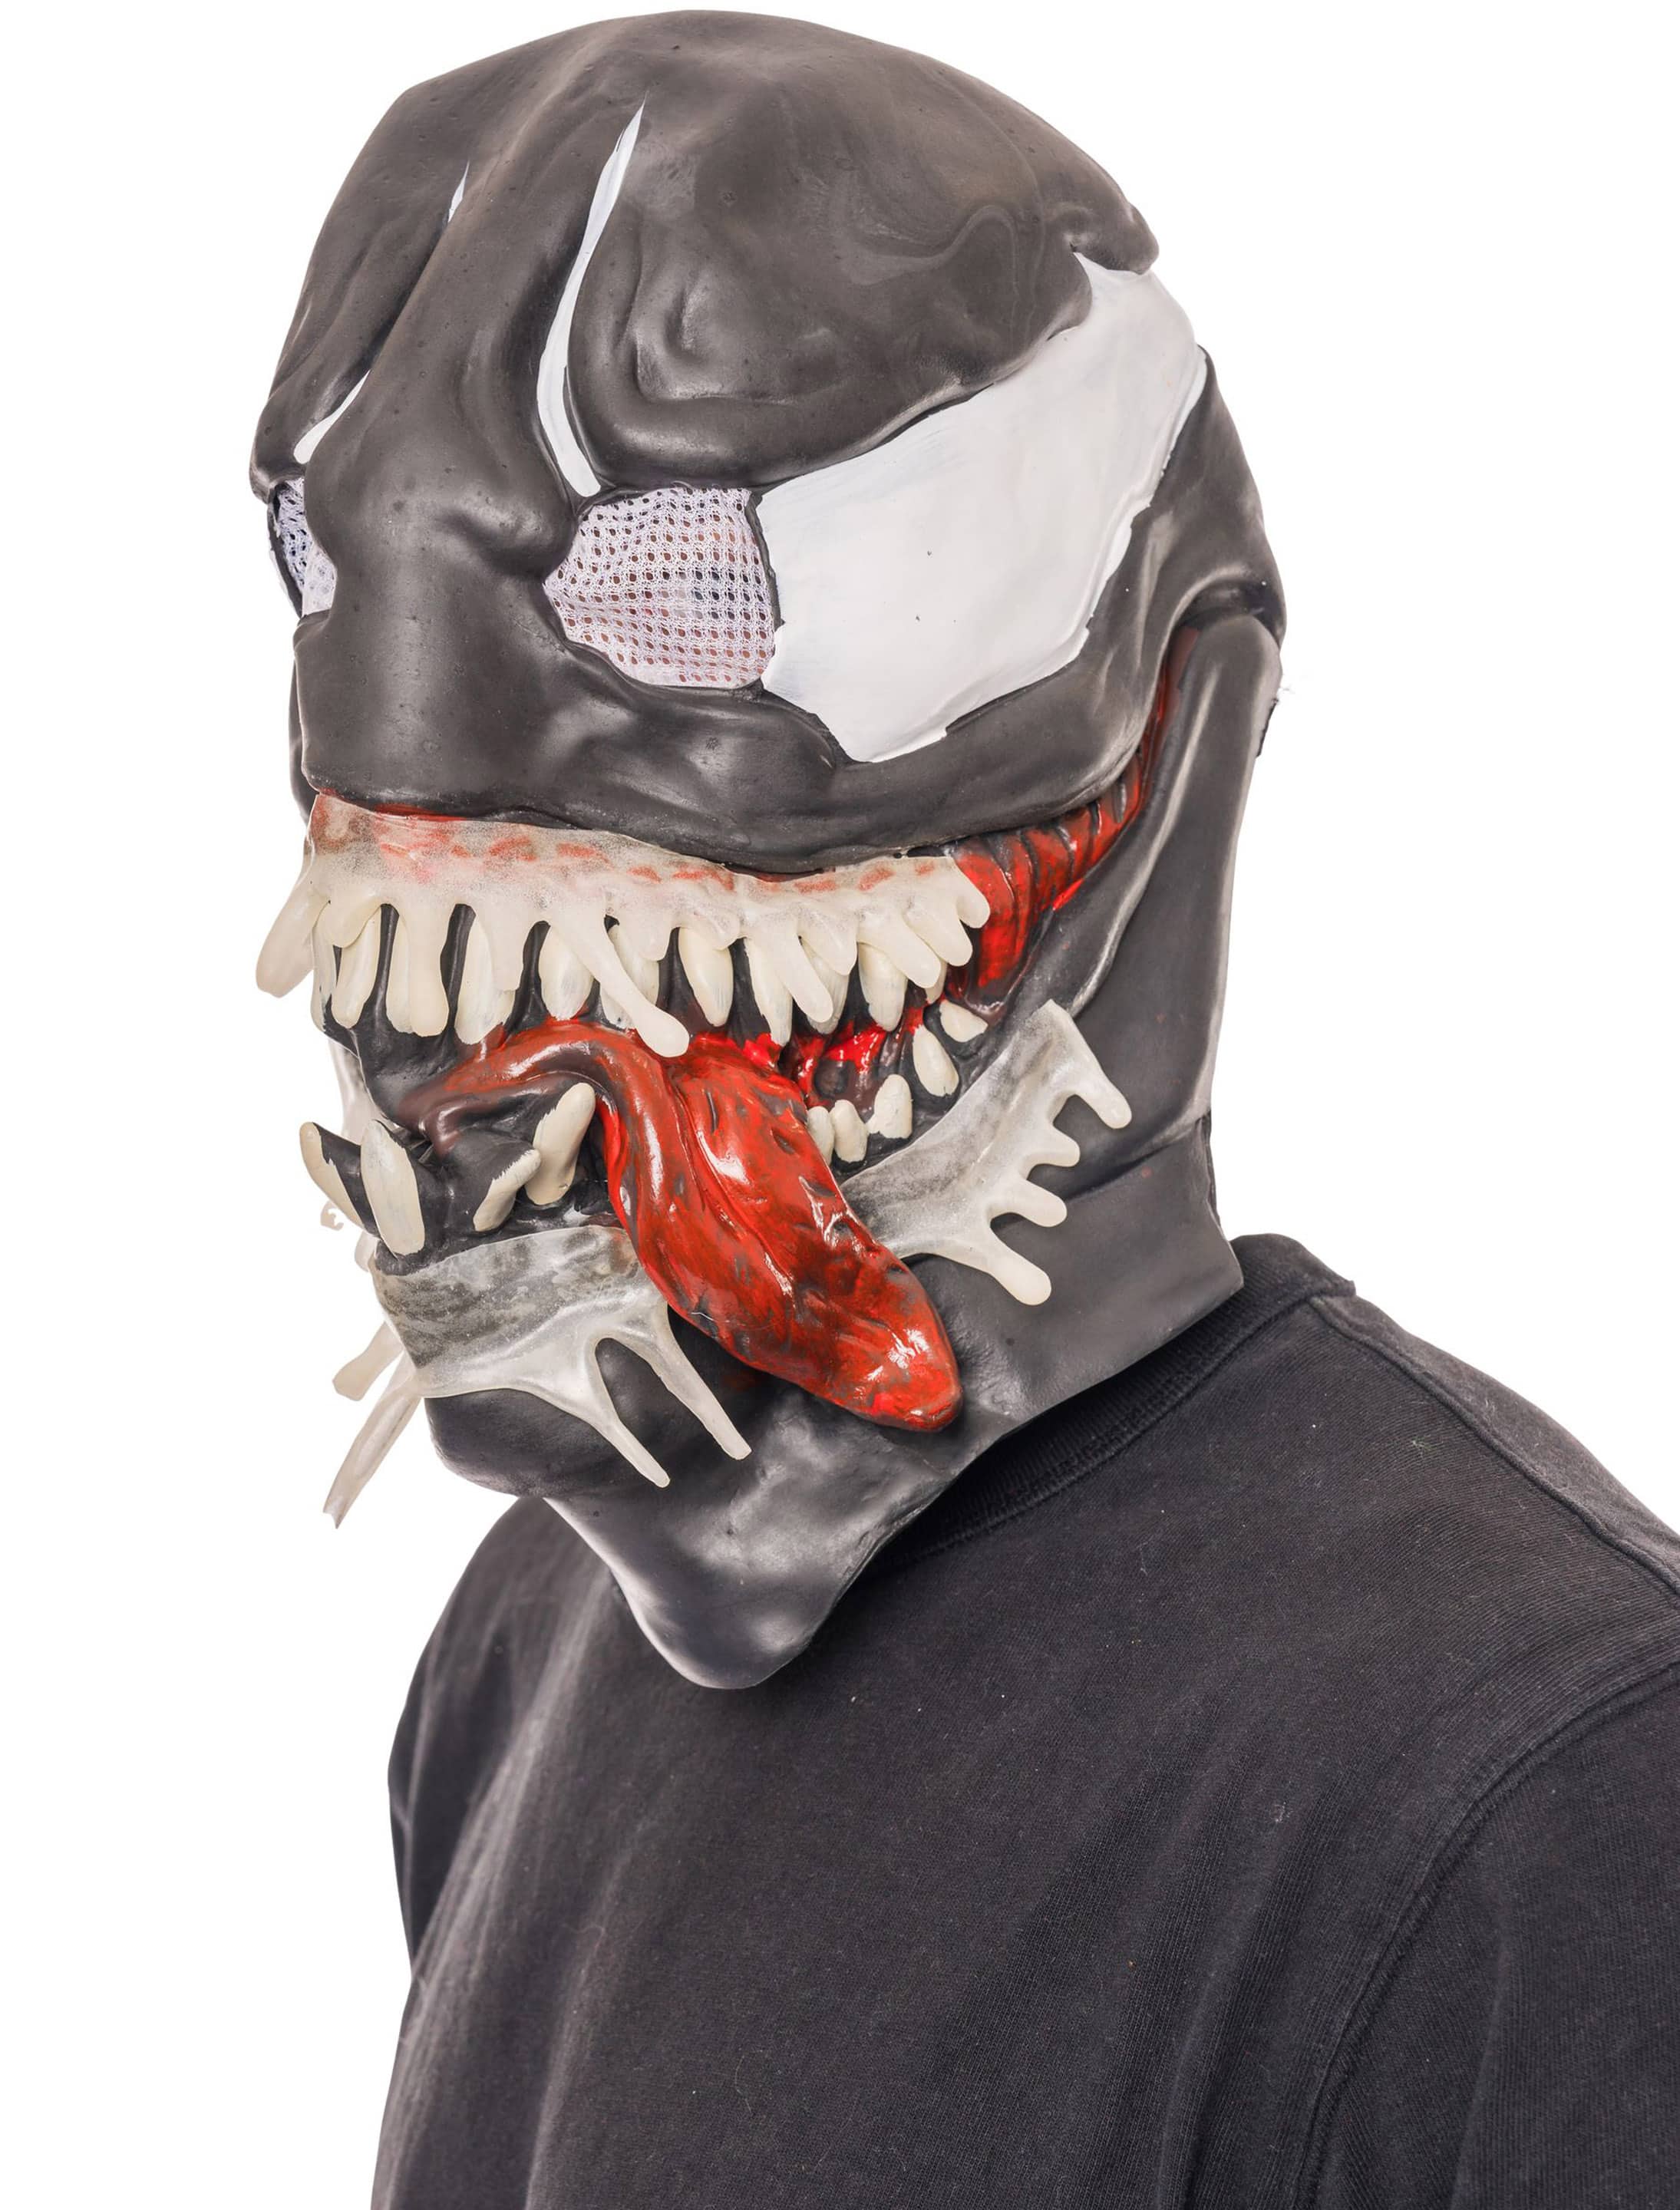 Maske Venom 3/4 schwarz/weiß/rot one size